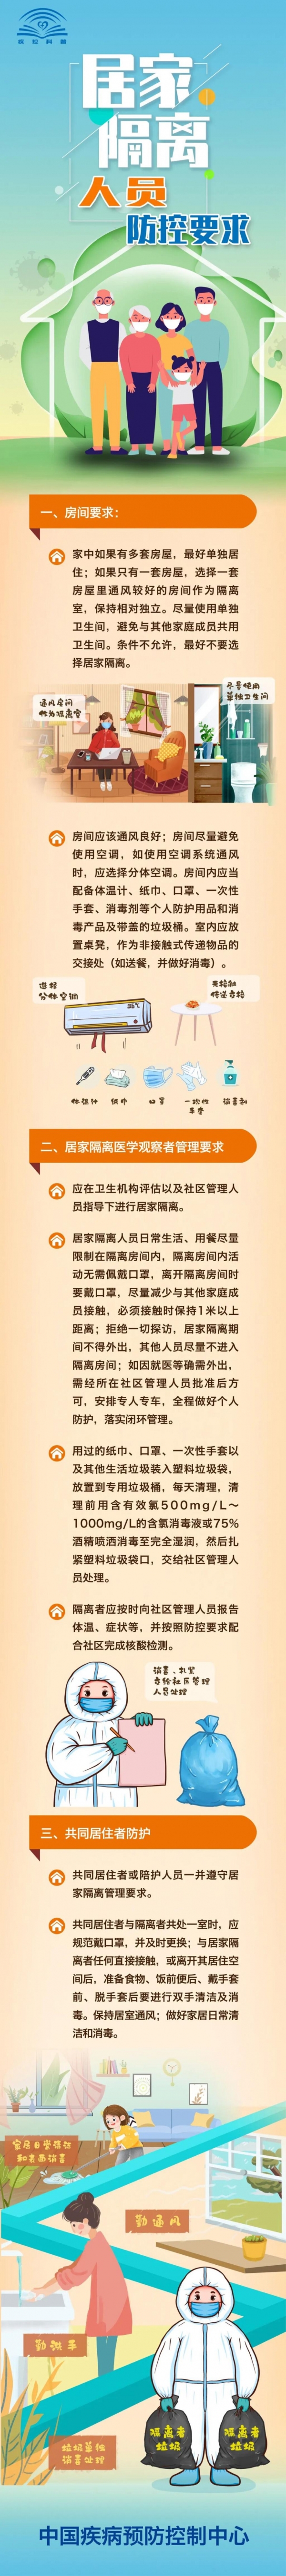 中国疾控中心发布居家隔离人员防控要求